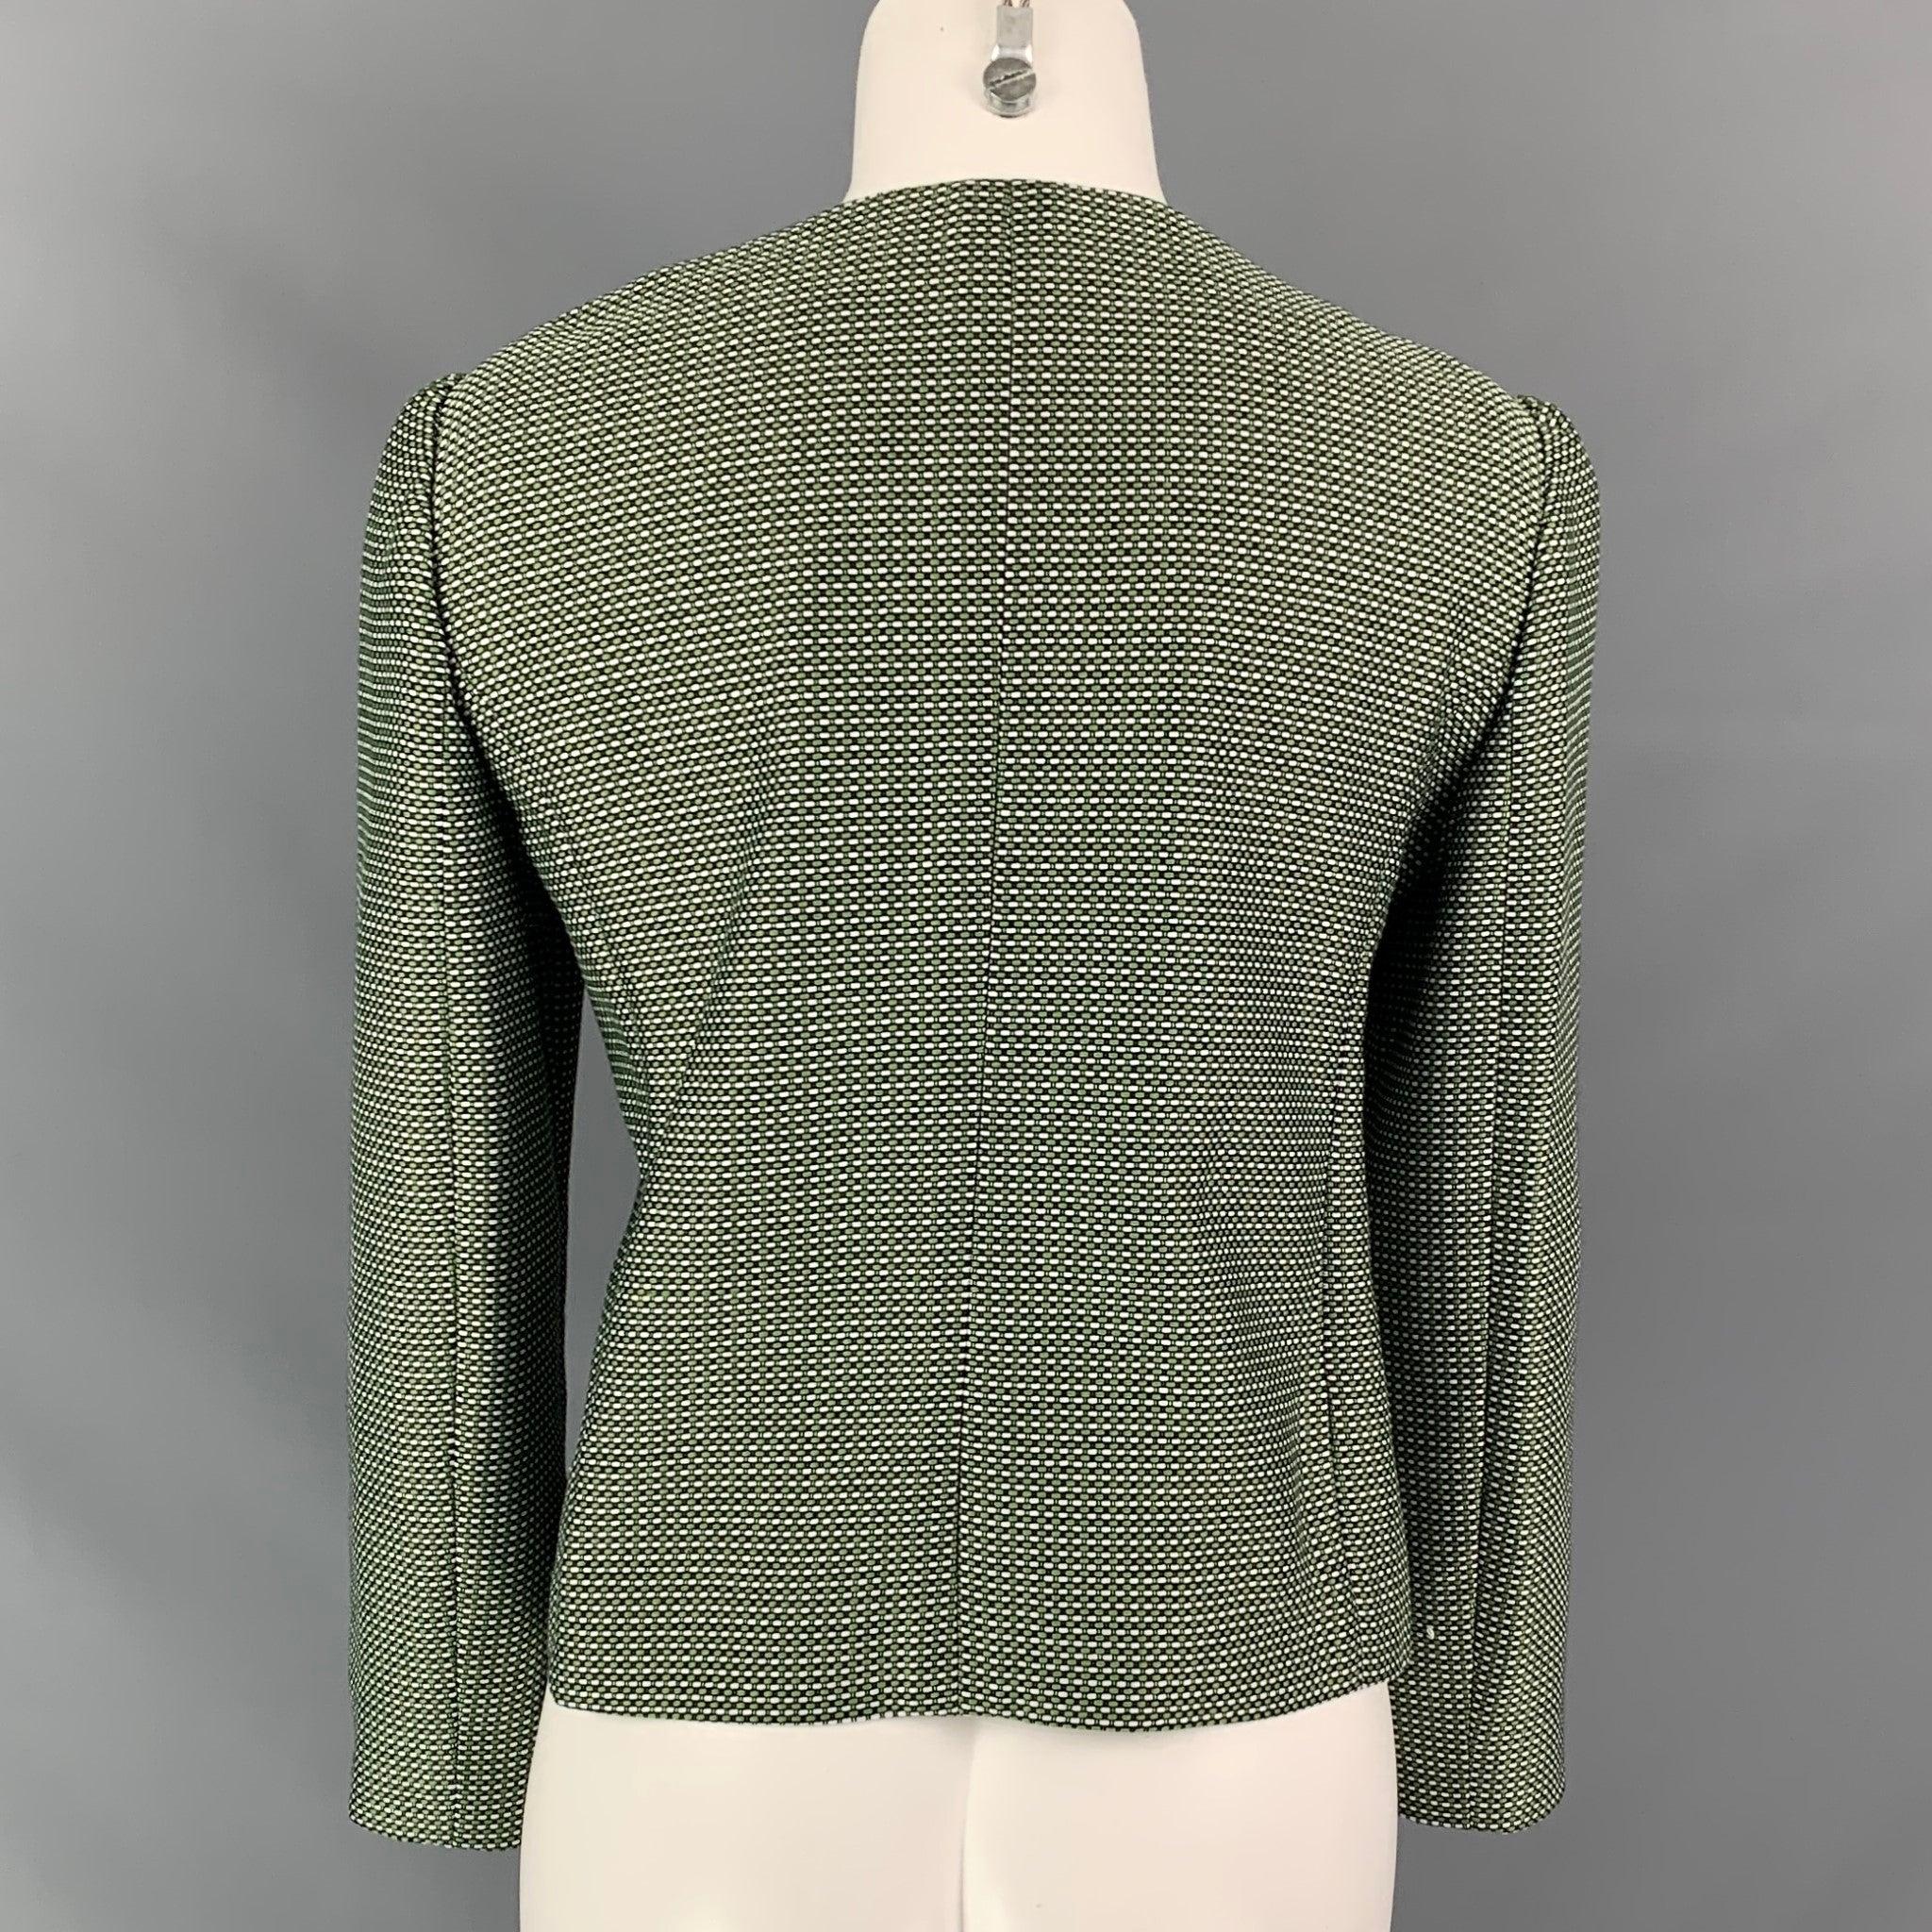 Women's ARMANI COLLEZIONI Size 12 Green & White Woven Textured Cotton / Polyester Jacket